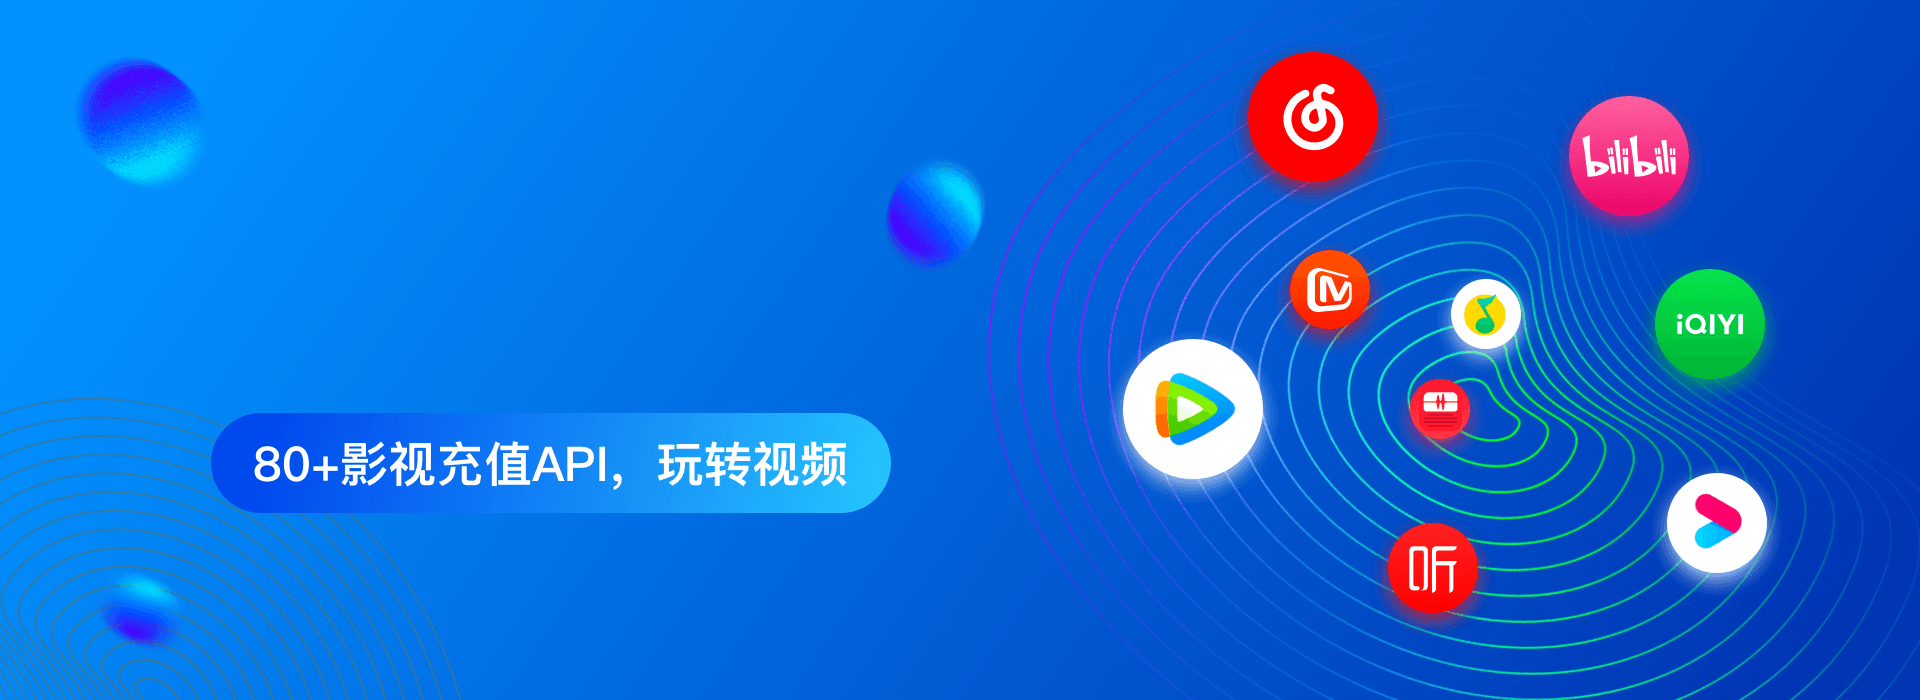 河南灵驰网络科技有限公司公司介绍